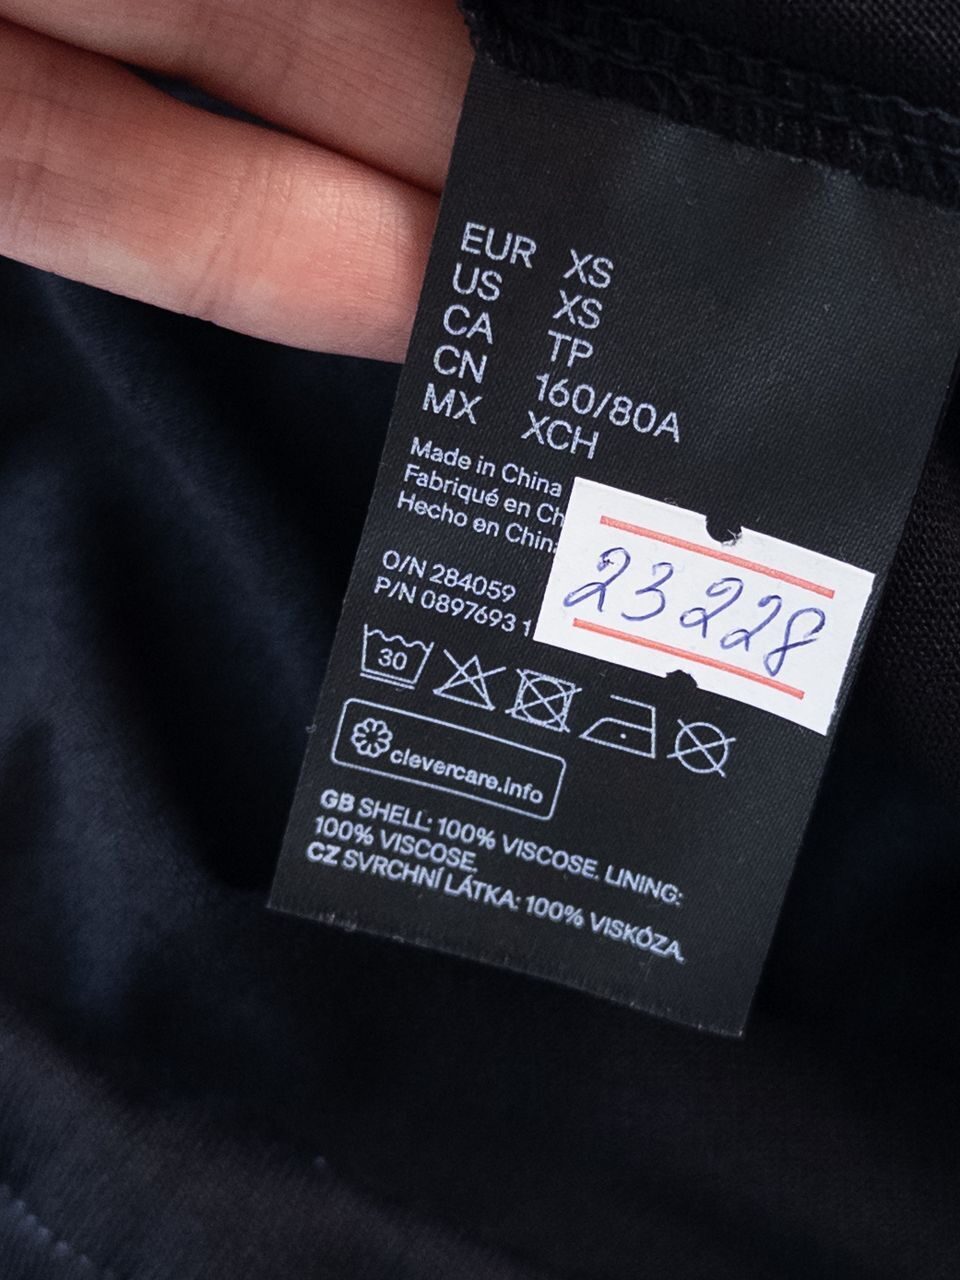 Платье на регулируемых бретелях из вискозы цвет черный размер EUR XS (rus 40) H&M